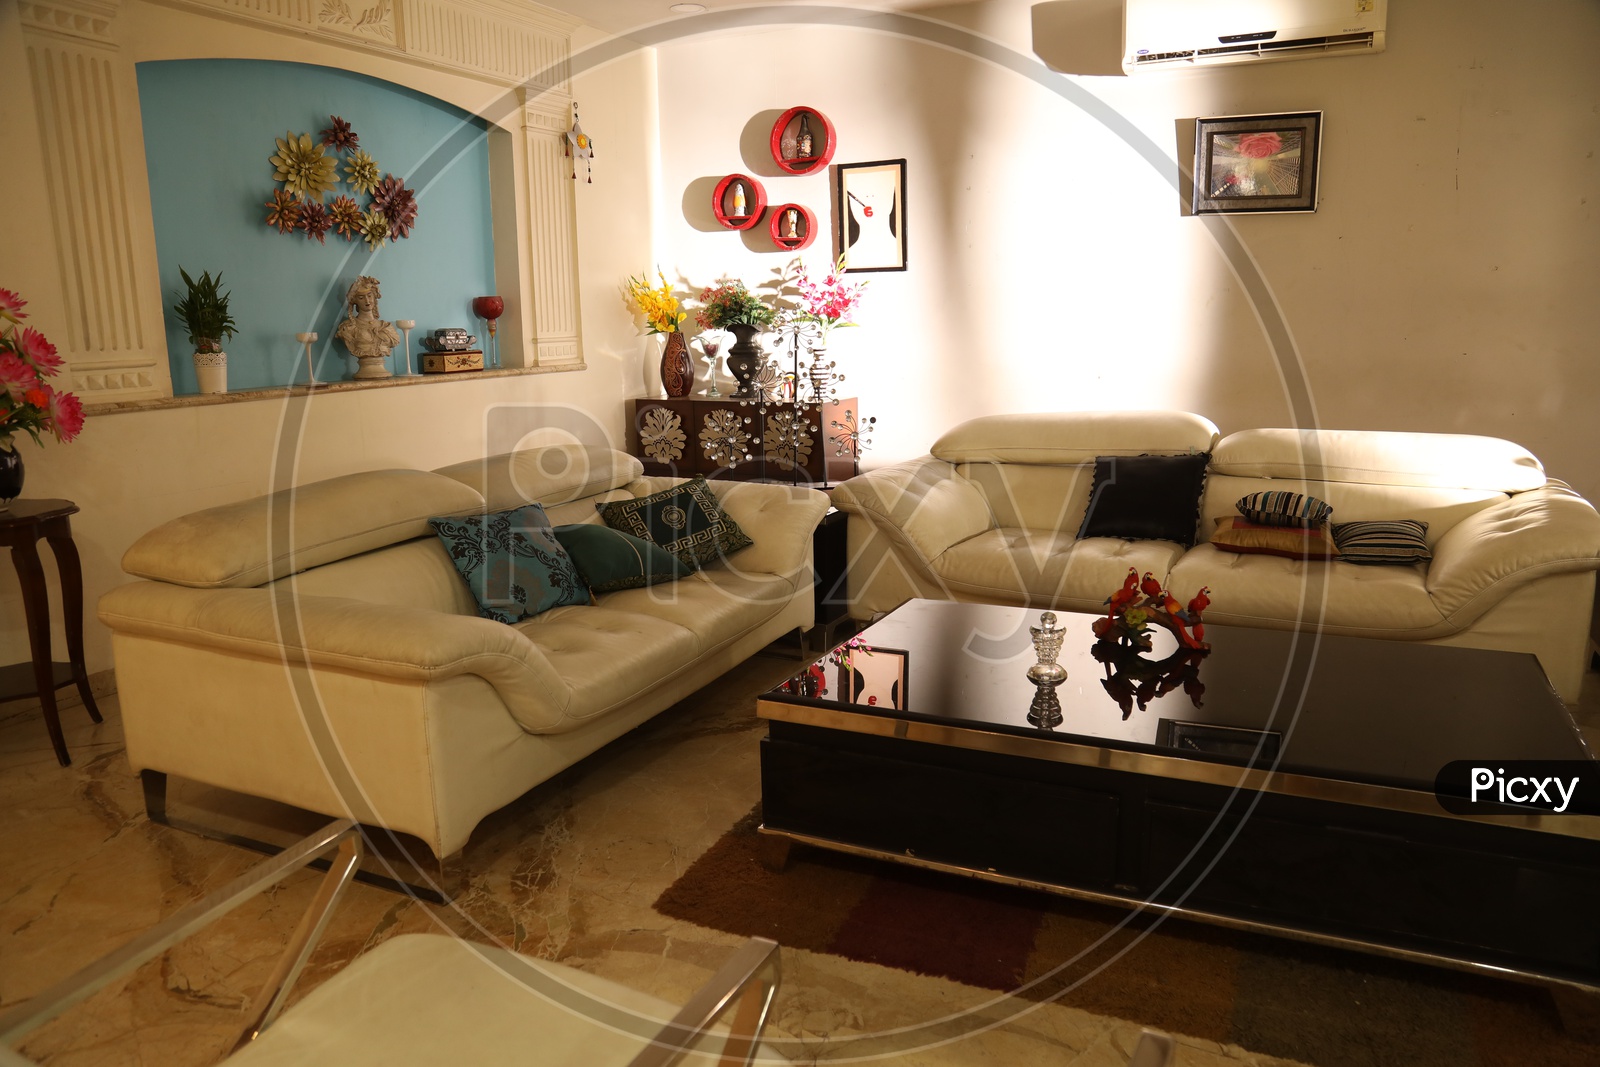 Interior design of a living room